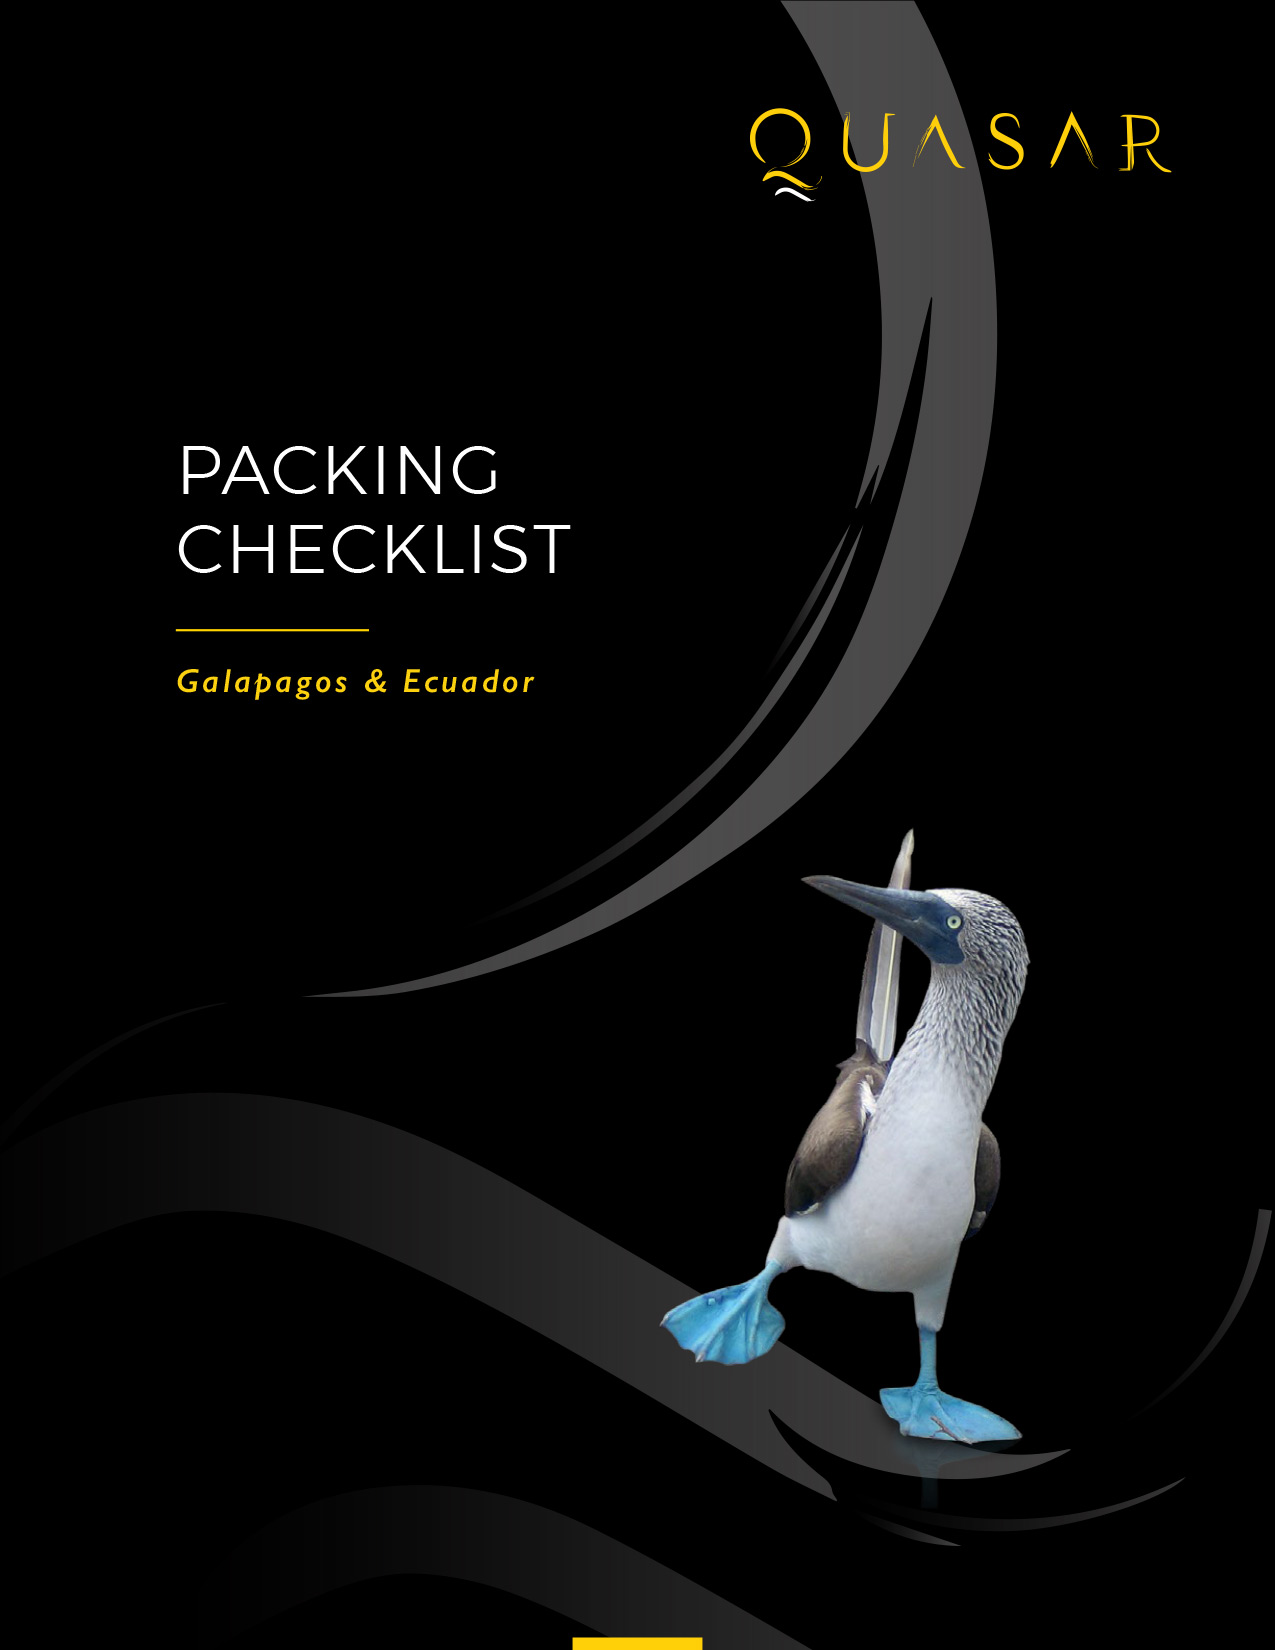 Packing Checklist for Galapagos & Ecuador